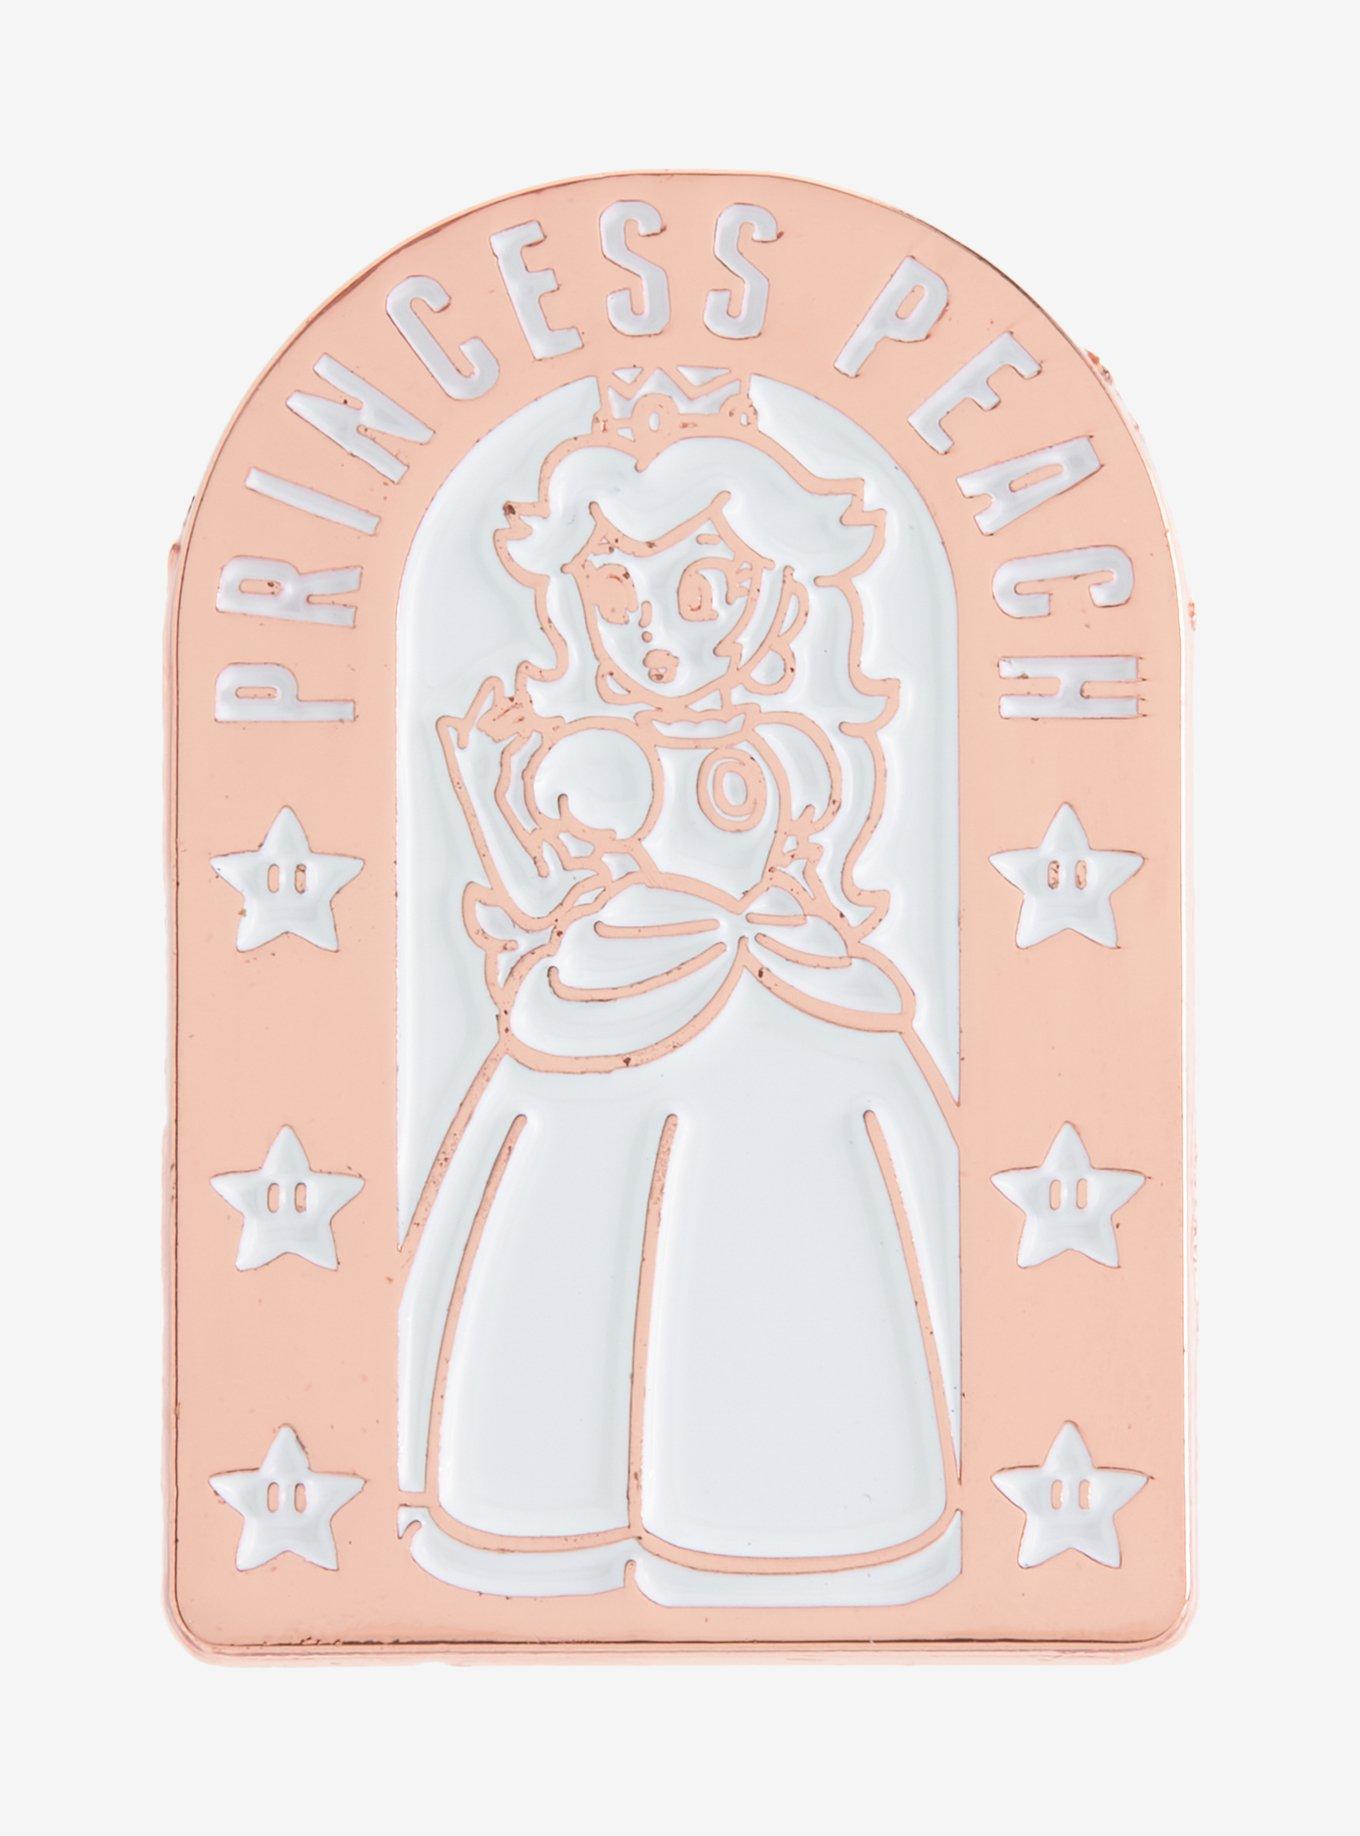 Nintendo Super Mario Bros. Princess Peach Arch Portrait Enamel Pin - BoxLunch Exclusive, , hi-res